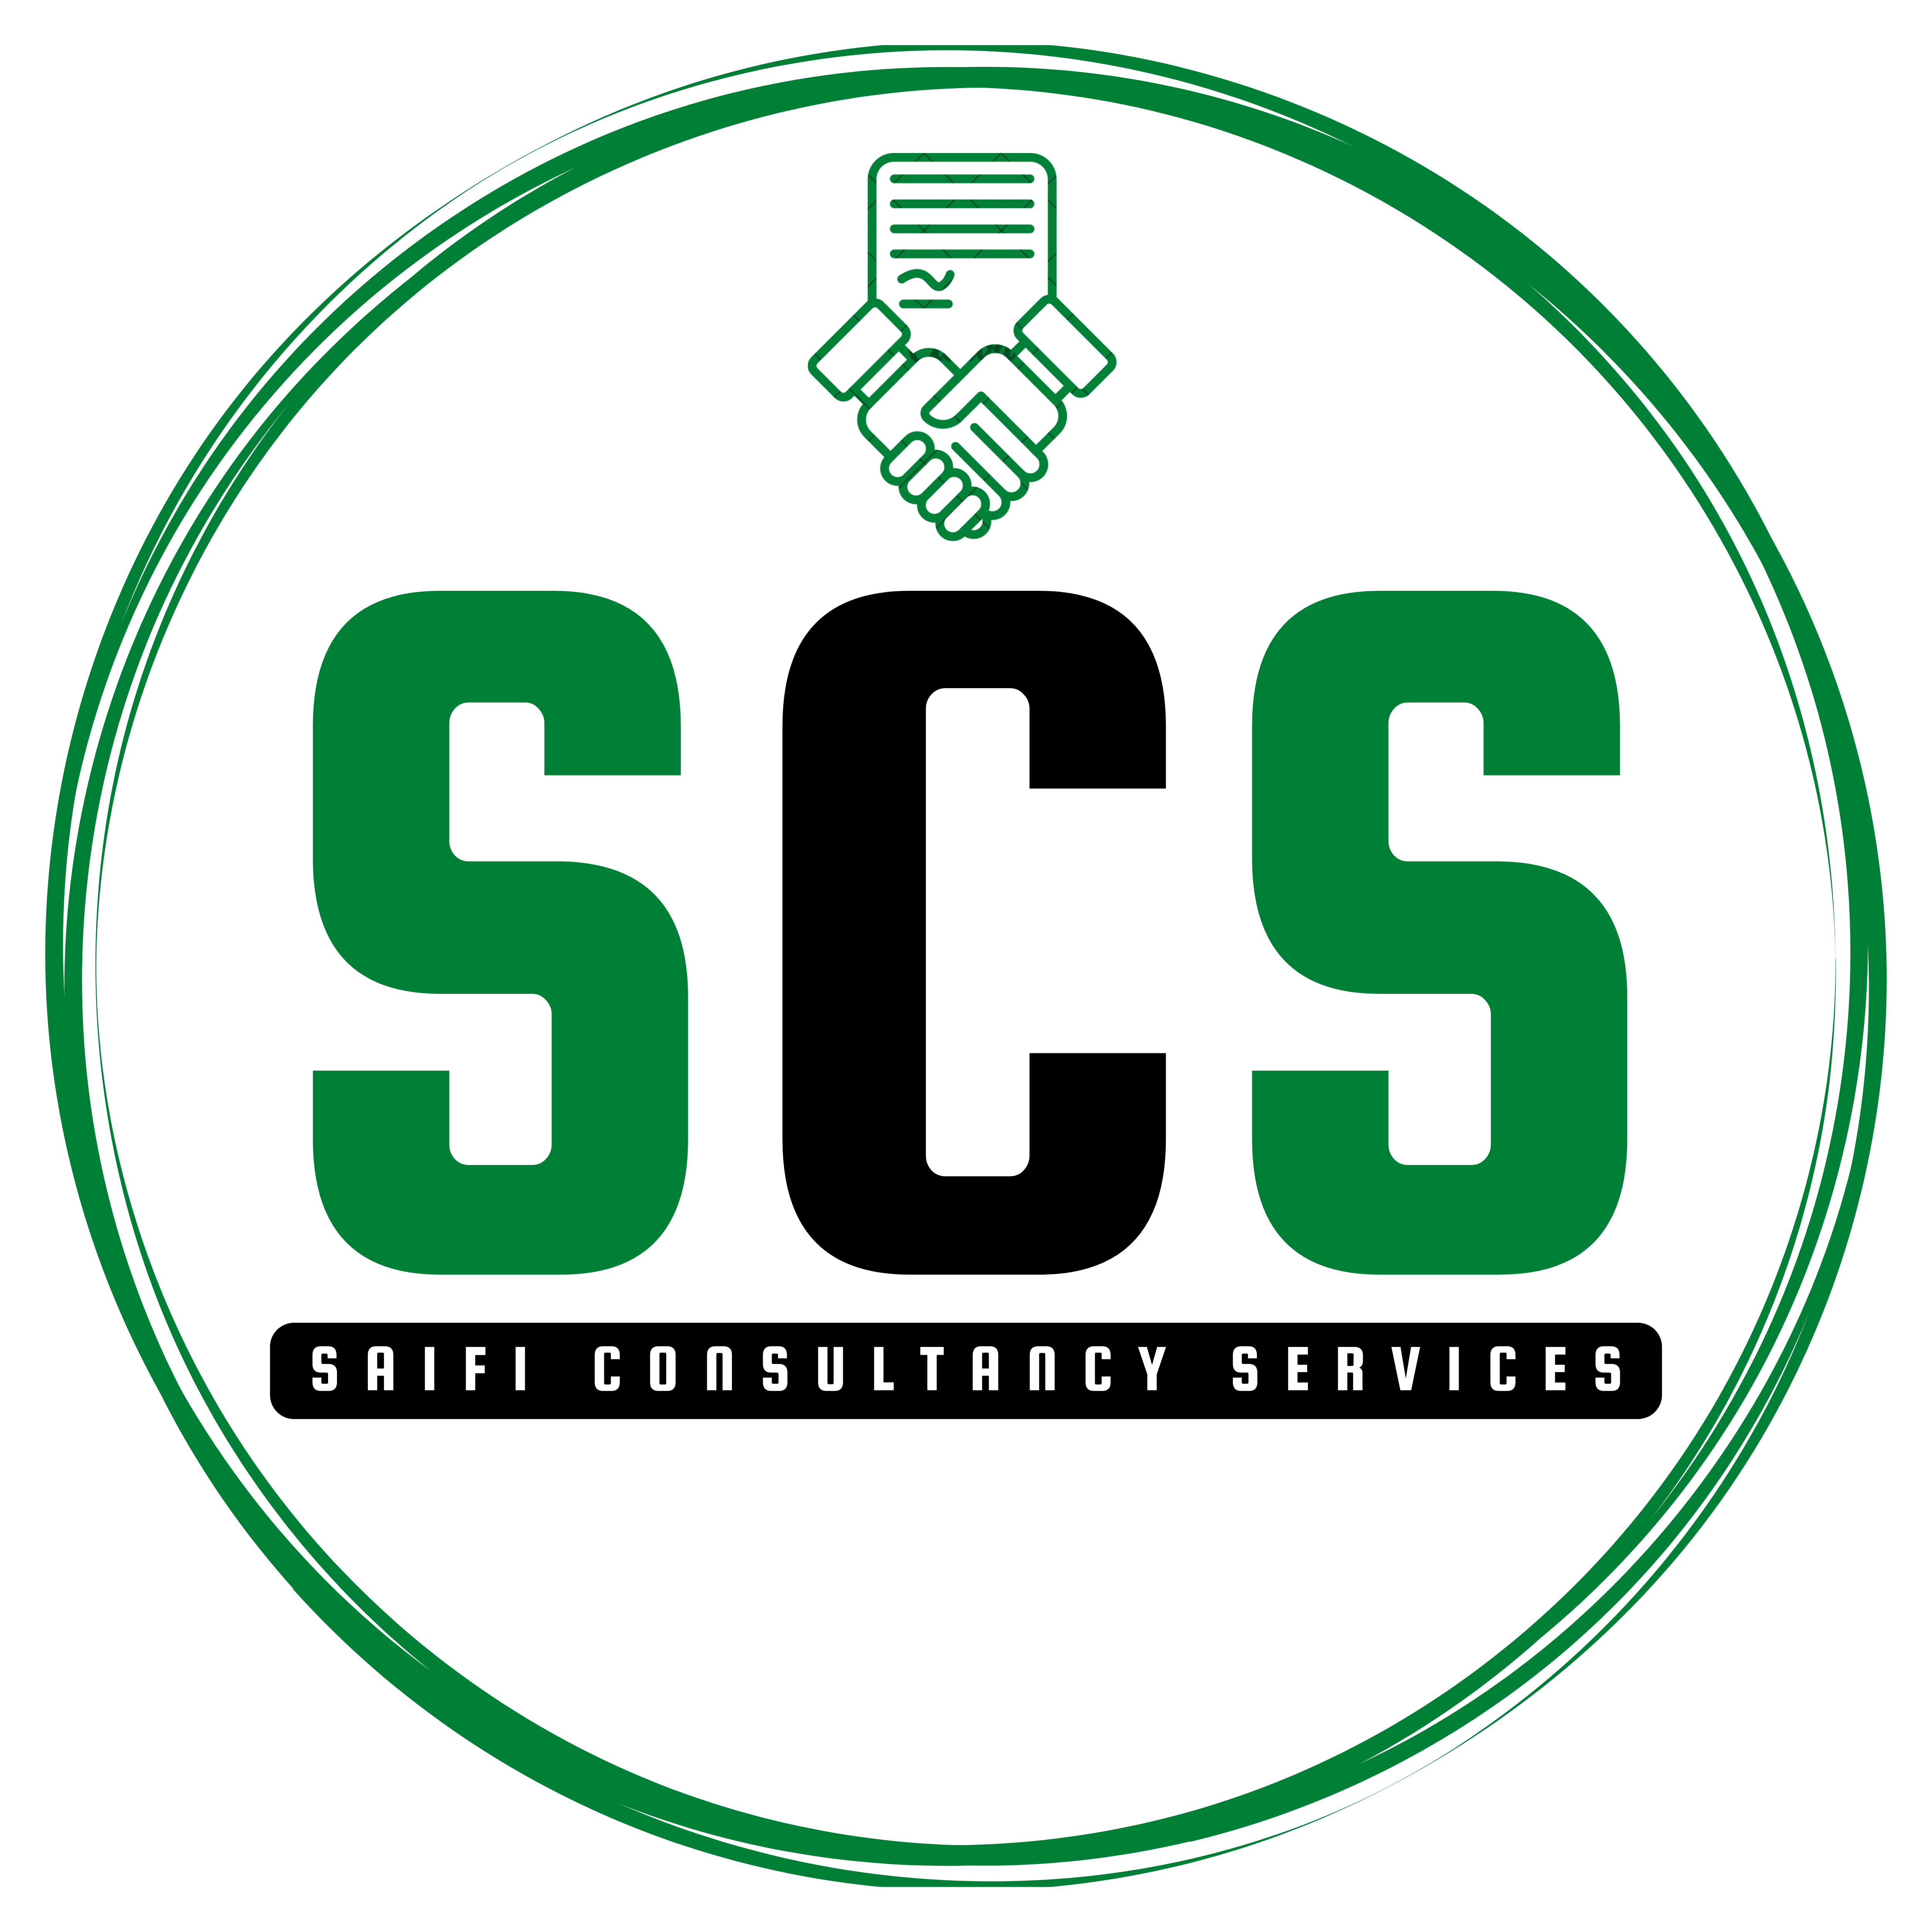 SCS logo (5k)